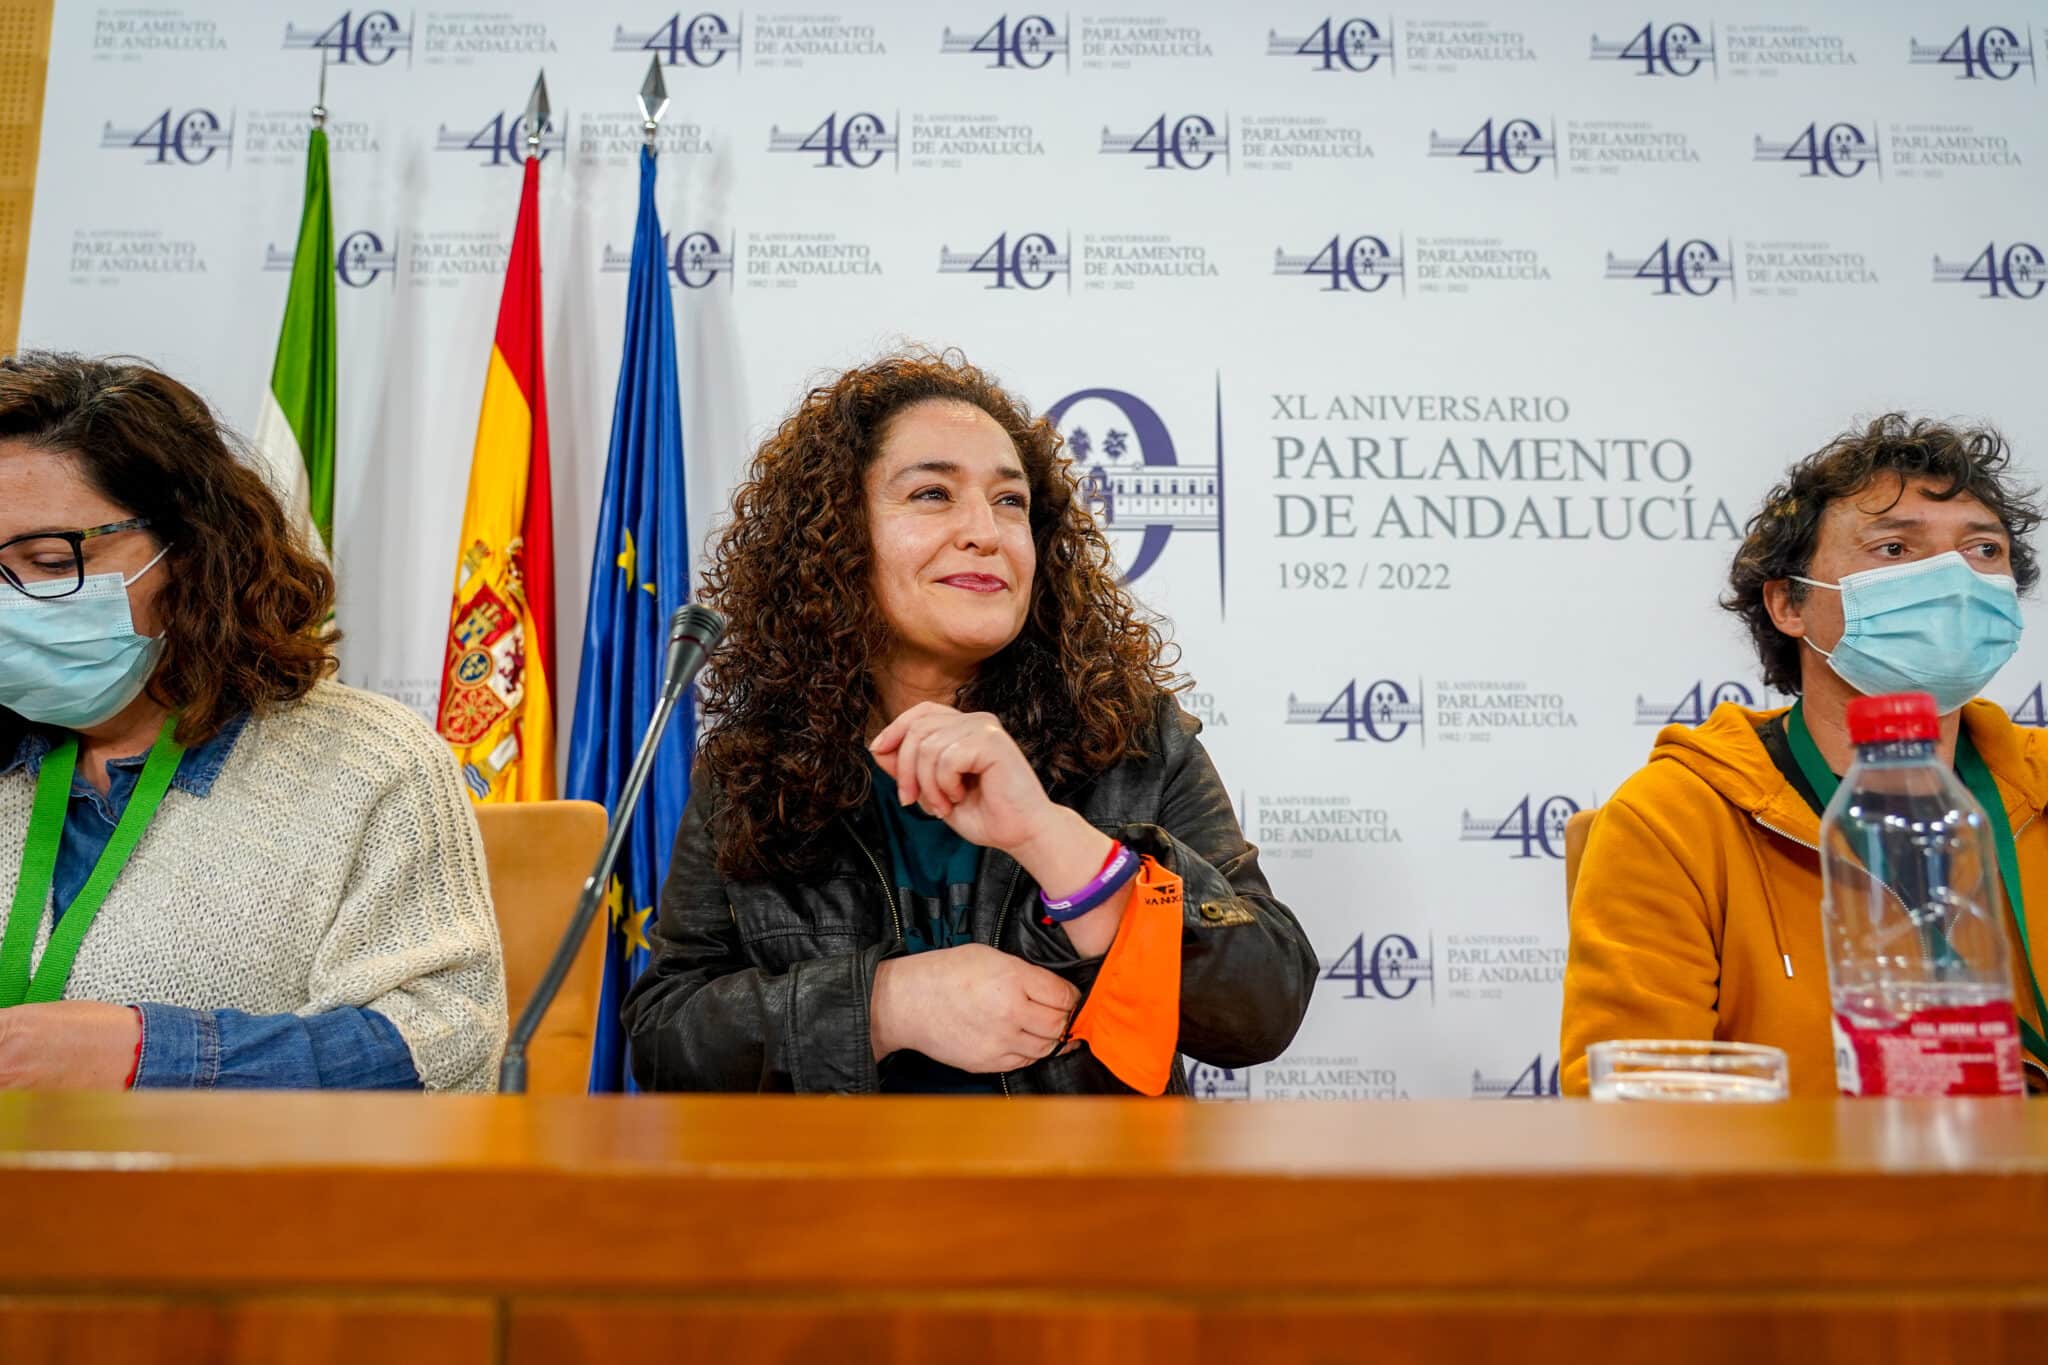 La portavoz del grupo parlamentario Unidas Podemos por Andalucía, Inmaculada Nieto, en rueda de prensa en el Parlamento de Andalucía